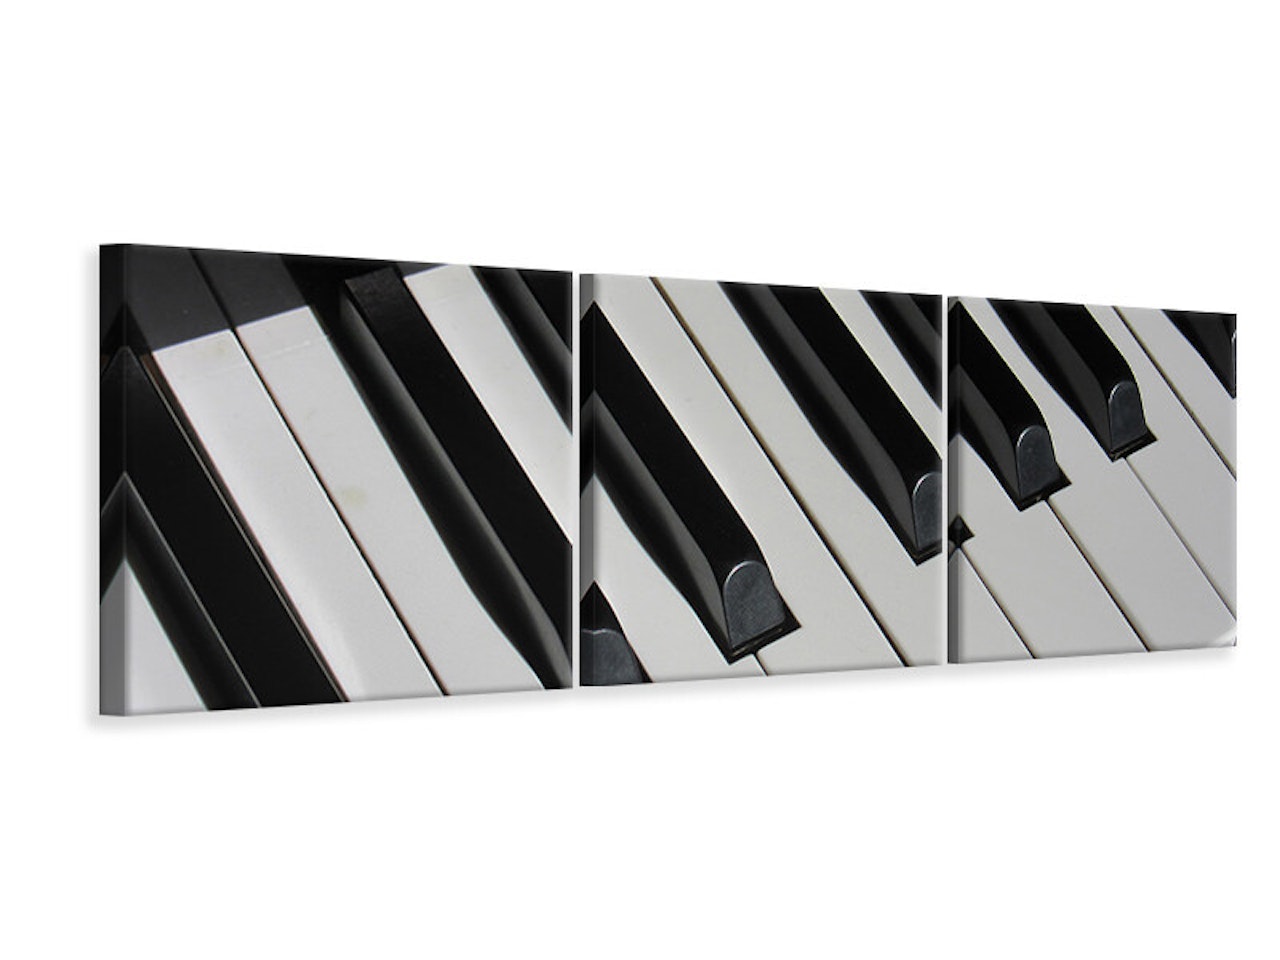 Ljuddämpande tavla -  Close up piano